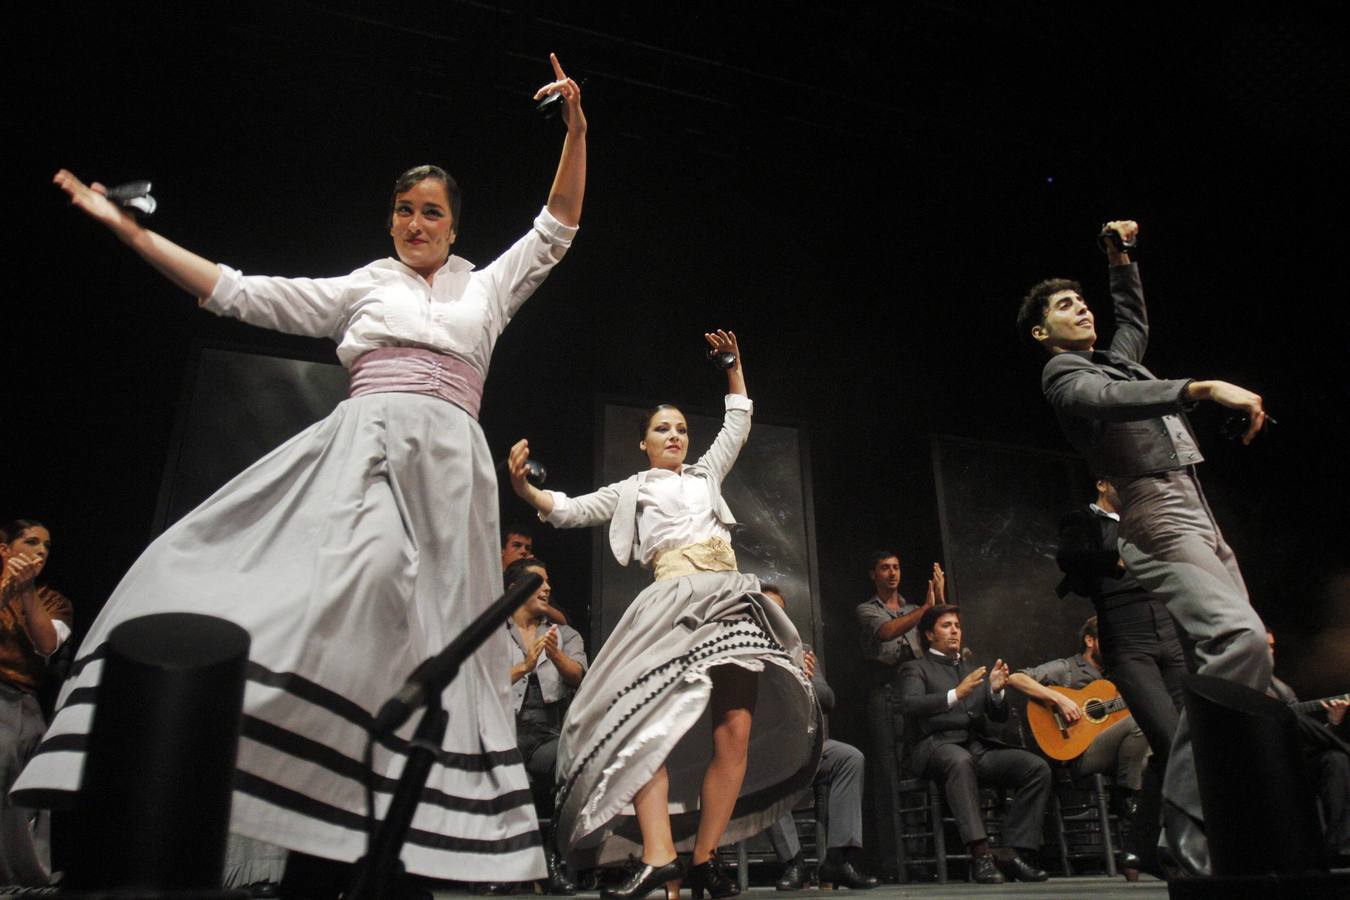 El corazón de la mina Agrupa Vicenta en La Unión fue ayer el escenario del recital de cante que ofreció la ganadora de la última edición del Cante de las Minas, la malagueña Antonia Contreras. El Ballet Flamenco de Andalucía cierra las galas de la 57ª edición del Festival